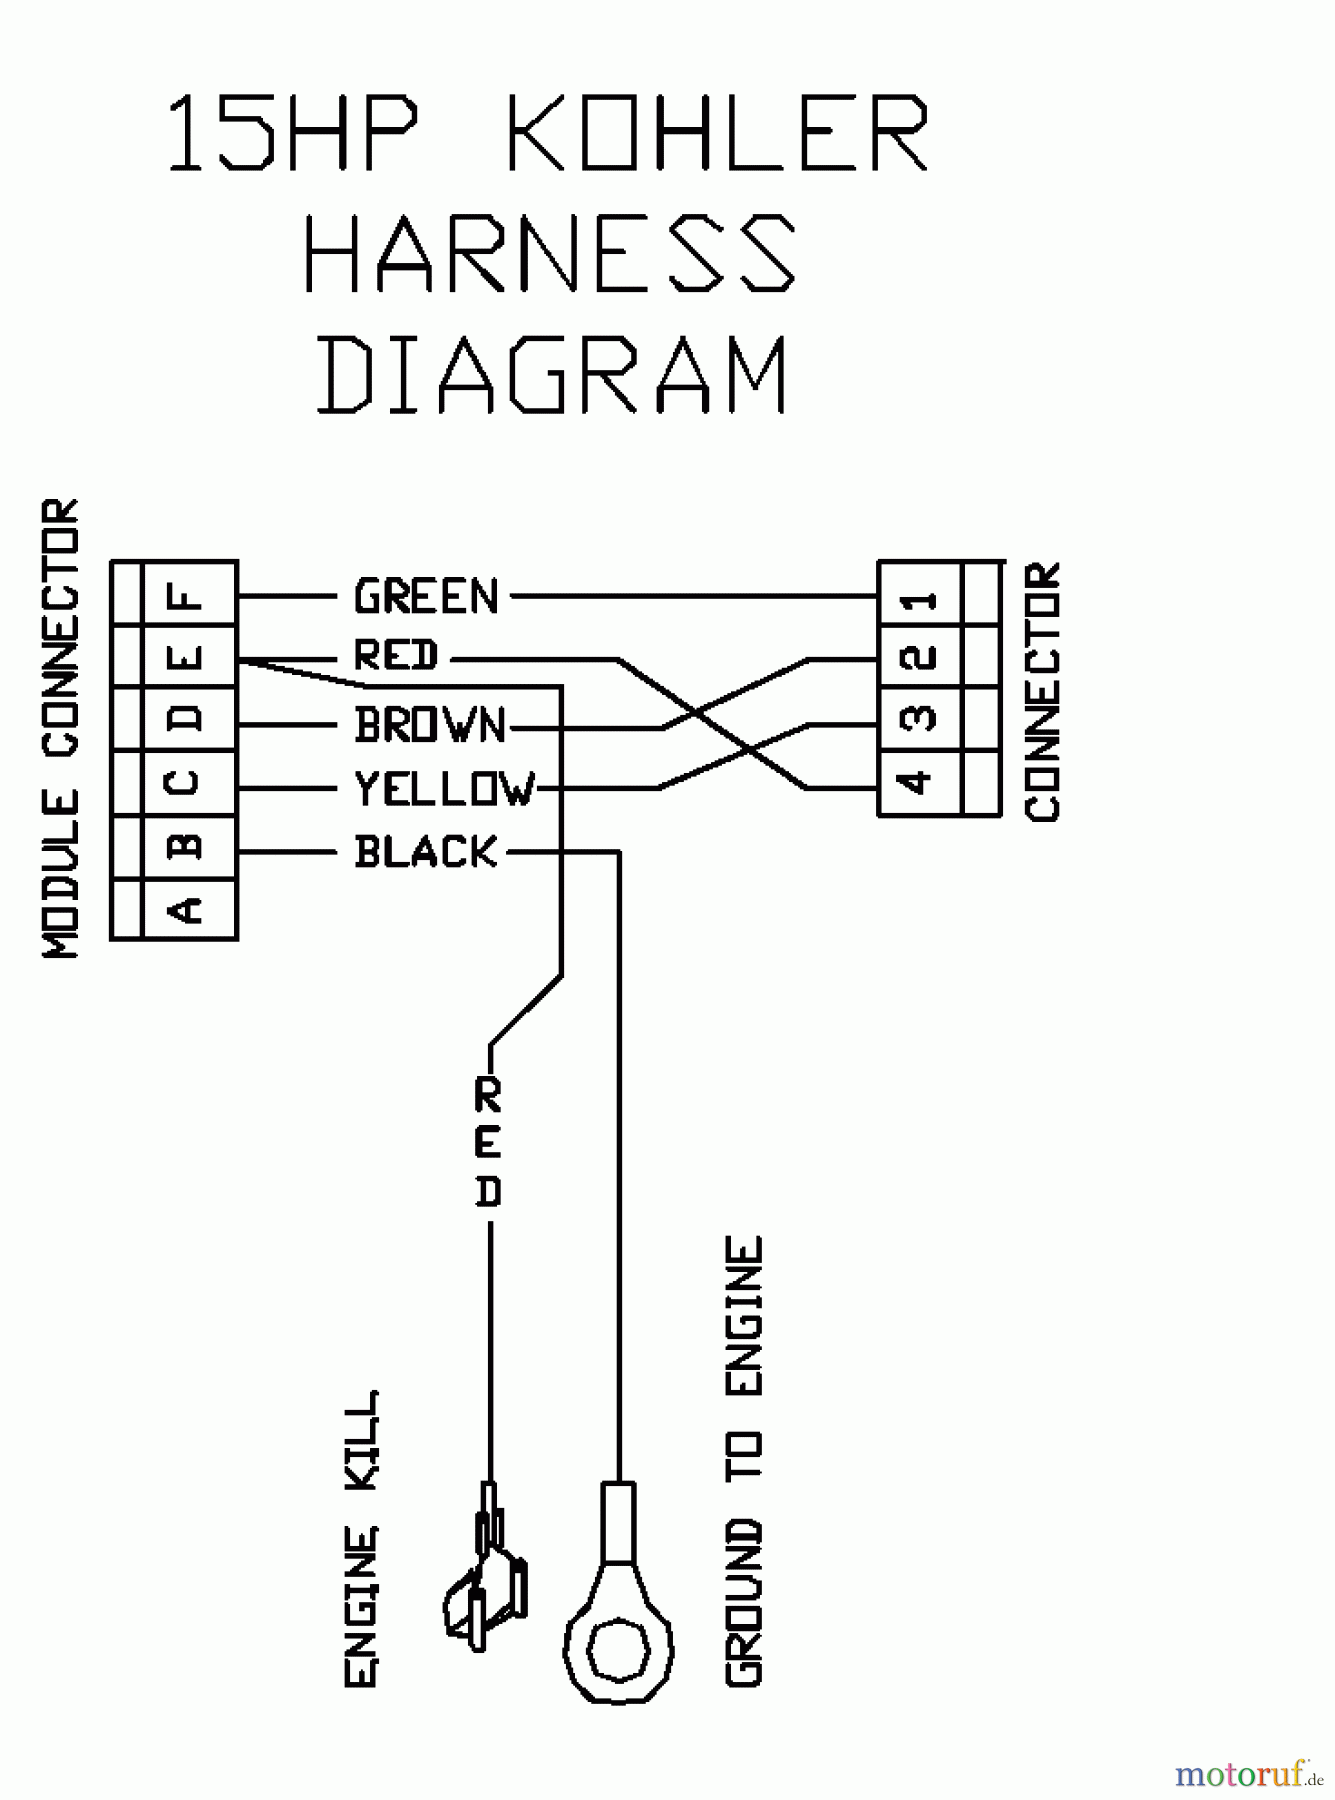  Husqvarna Rasenmäher für Großflächen WH 3615A (968999111) - Husqvarna Wide-Area Walk-Behind Mower (2000-06 to 2001-01) 15 HP Kohler Harness Diagram